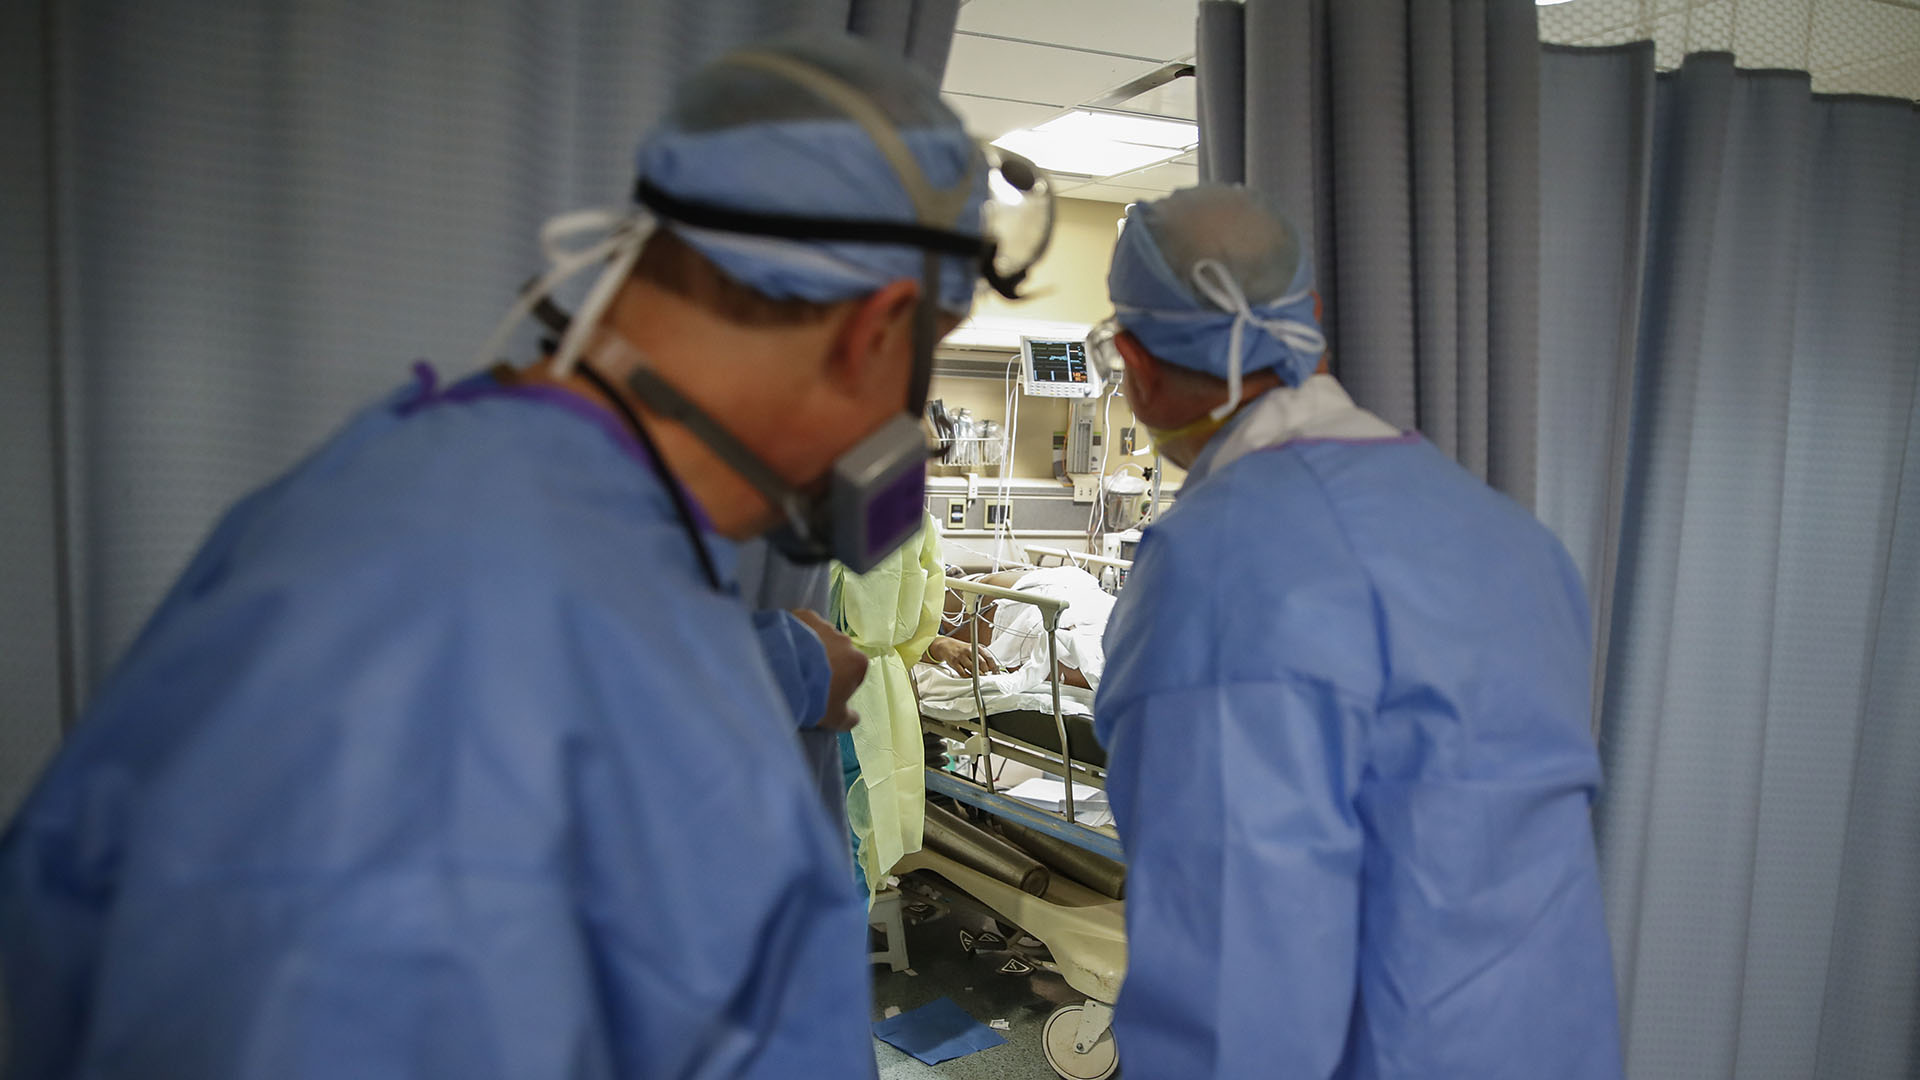 El Dr. Anthony Leno, Director de Medicina de Emergencia del Hospital St. Joseph's, a la izquierda, y el Dr. James Neuendorf, Director de Medicina, a la derecha, examinan una sala de examen donde un paciente con COVID-19 sufrió un paro cardíaco y fue revivido (AP/John Minchillo)